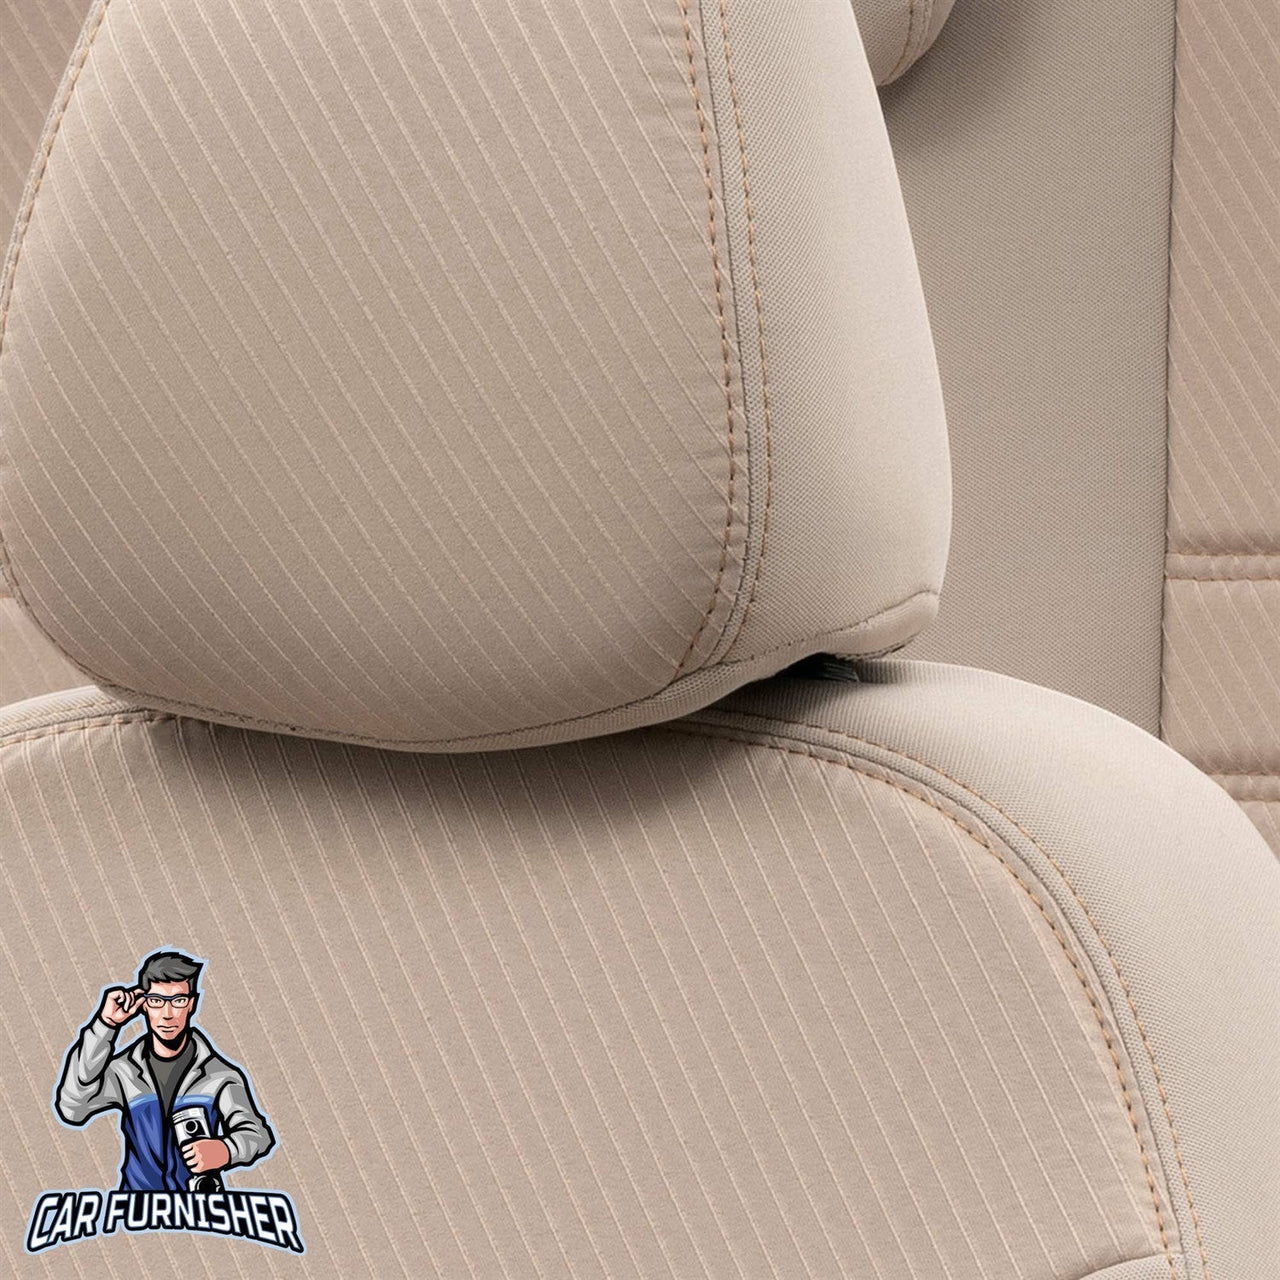 Volkswagen Touareg Seat Cover Original Jacquard Design Dark Beige Jacquard Fabric